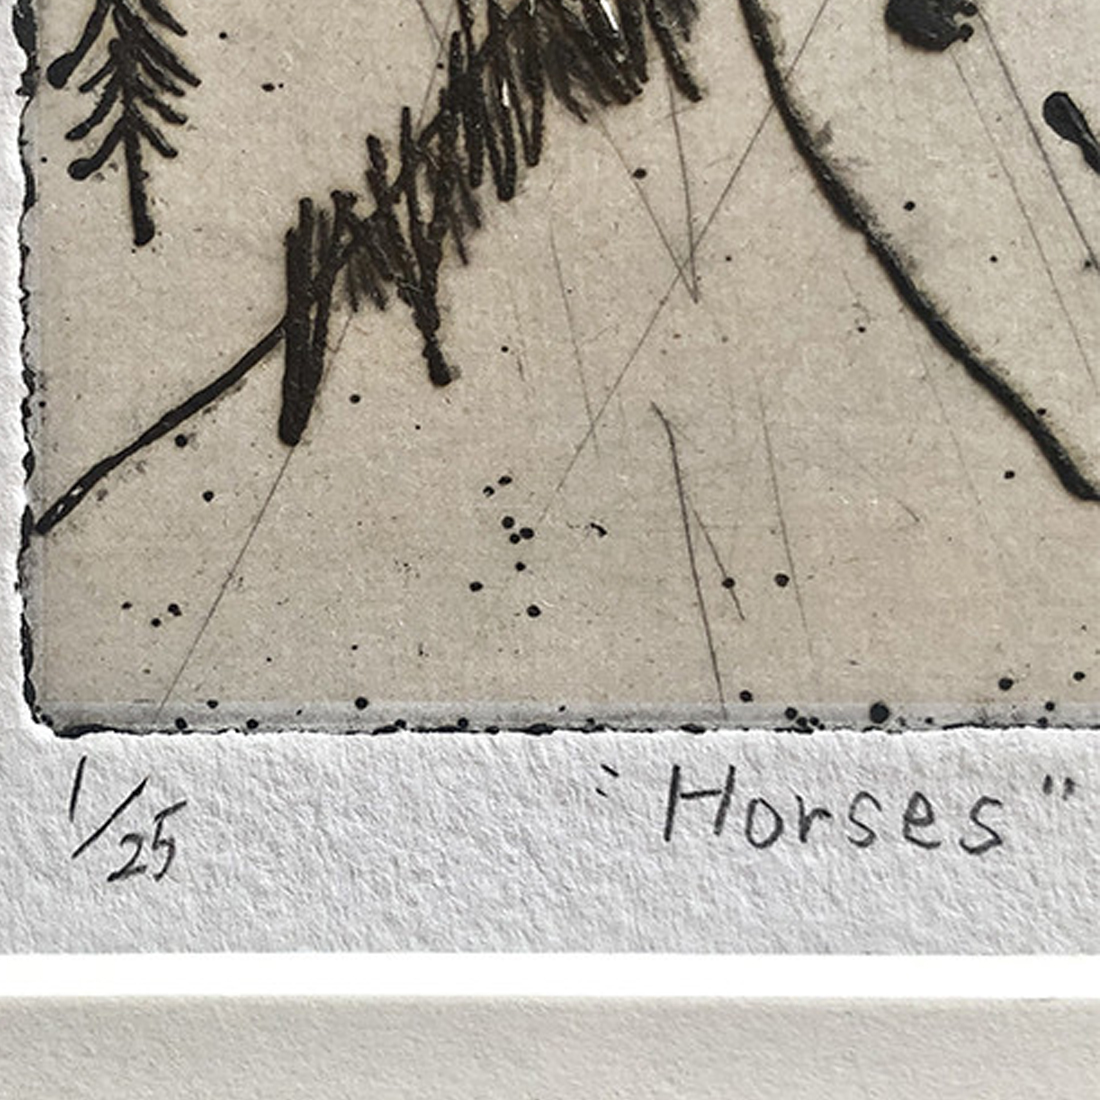 作品「Horses」